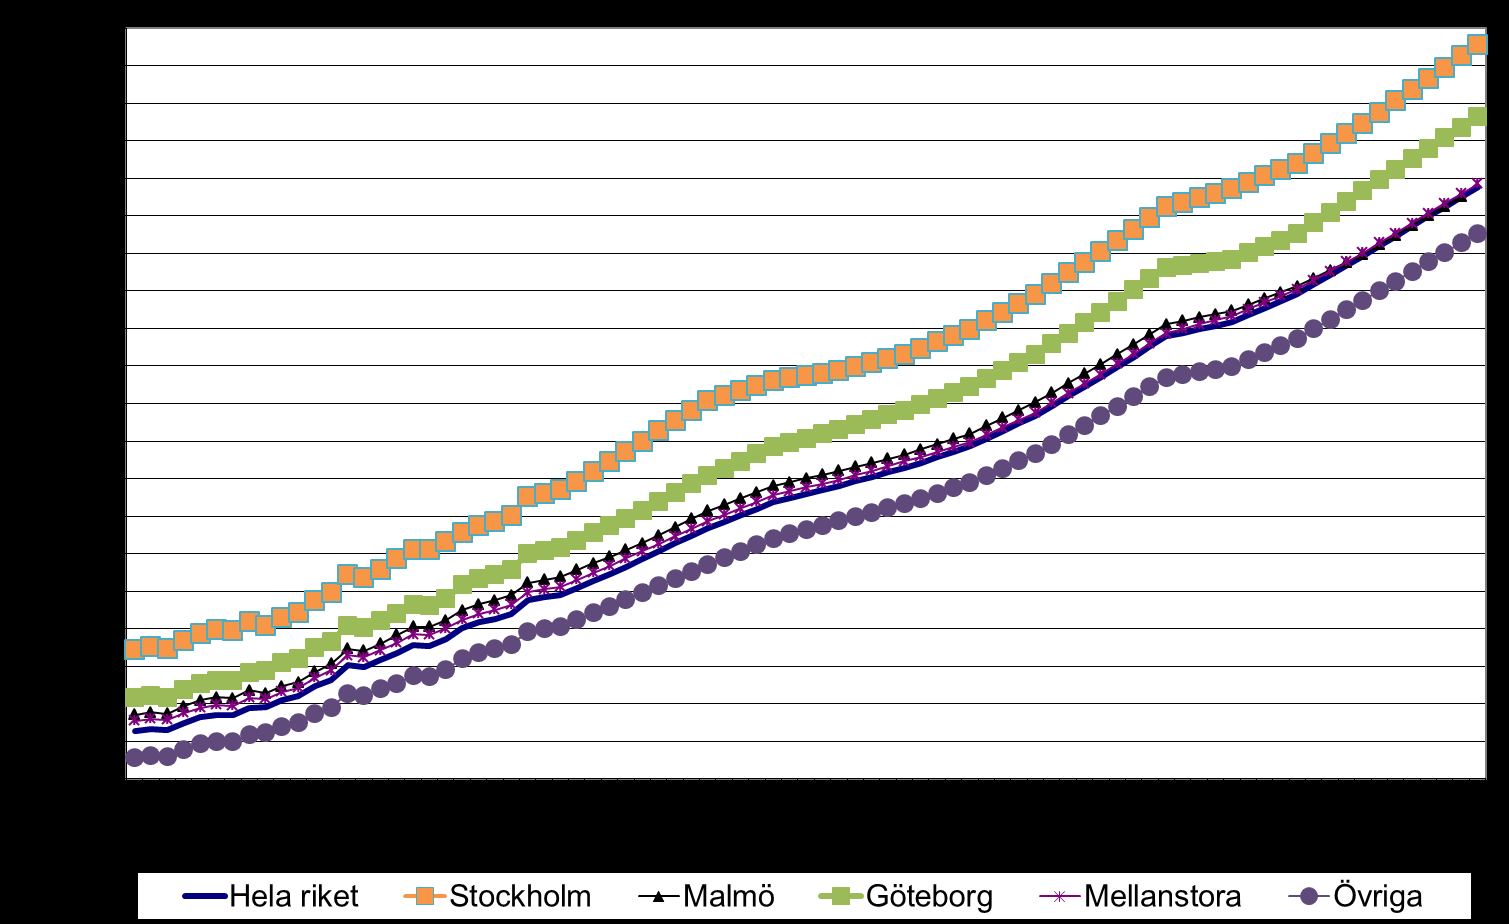 väsentligt under stockholmsnivån, utan Boindex ligger på 91,7. Malmöregionen sjunker återigen under 100-strecket (98,3 jämfört med förra kvartalets 100,1).